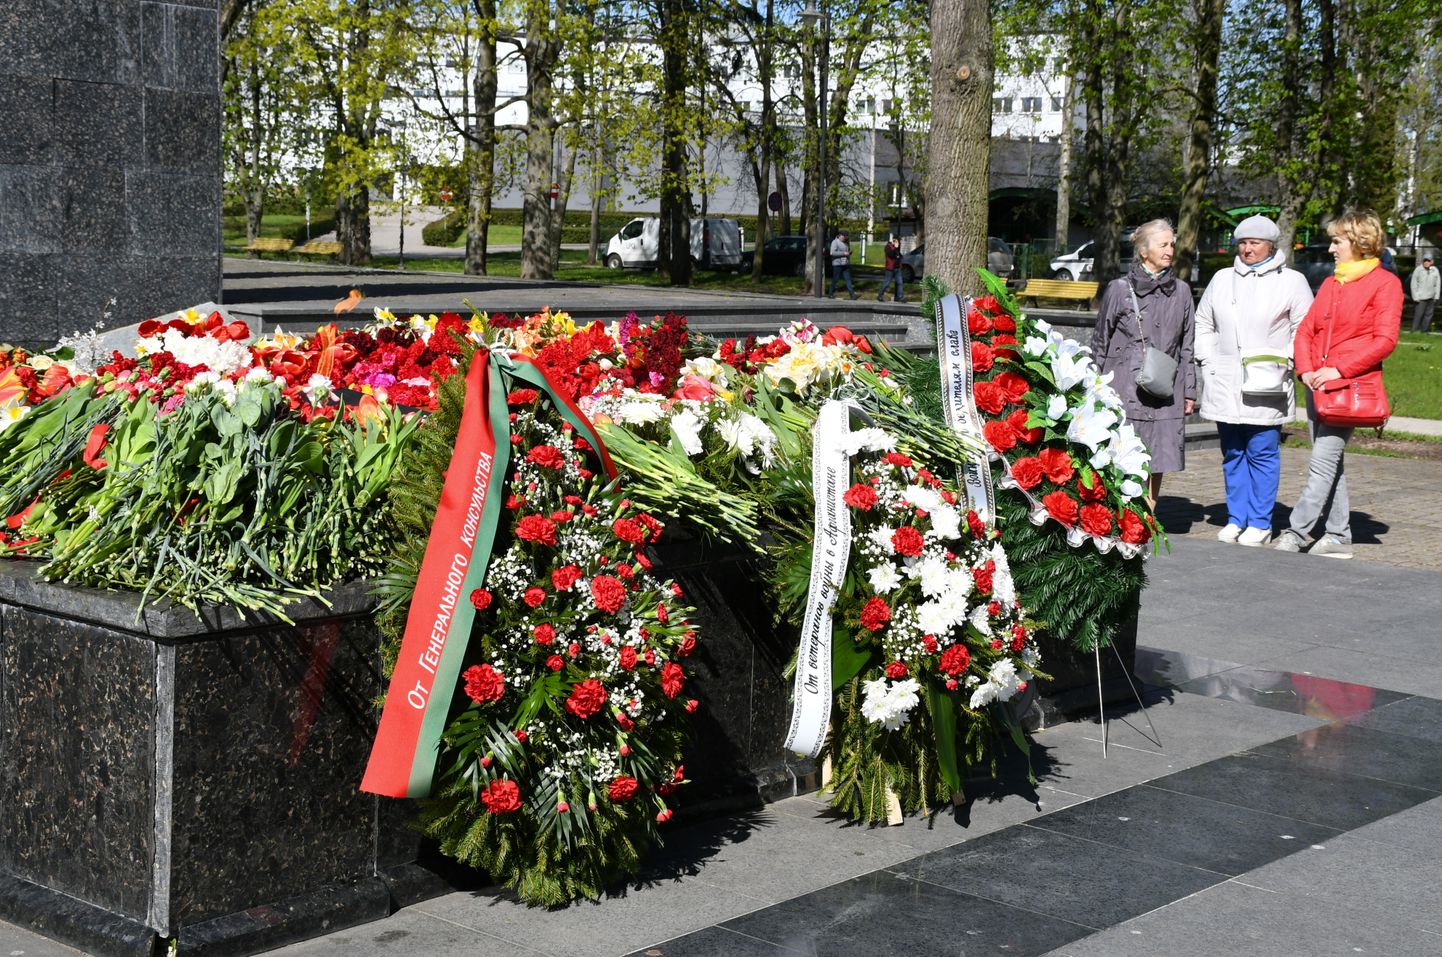 Pretēji Valsts policijas aicinājumam Ukrainas kara upuru piemiņas dienā nepulcēties pie padomju režīma memoriāliem, cilvēki ieradušies nolikt ziedus pie mūžīgās uguns Dubrovina parkā Daugavpilī.